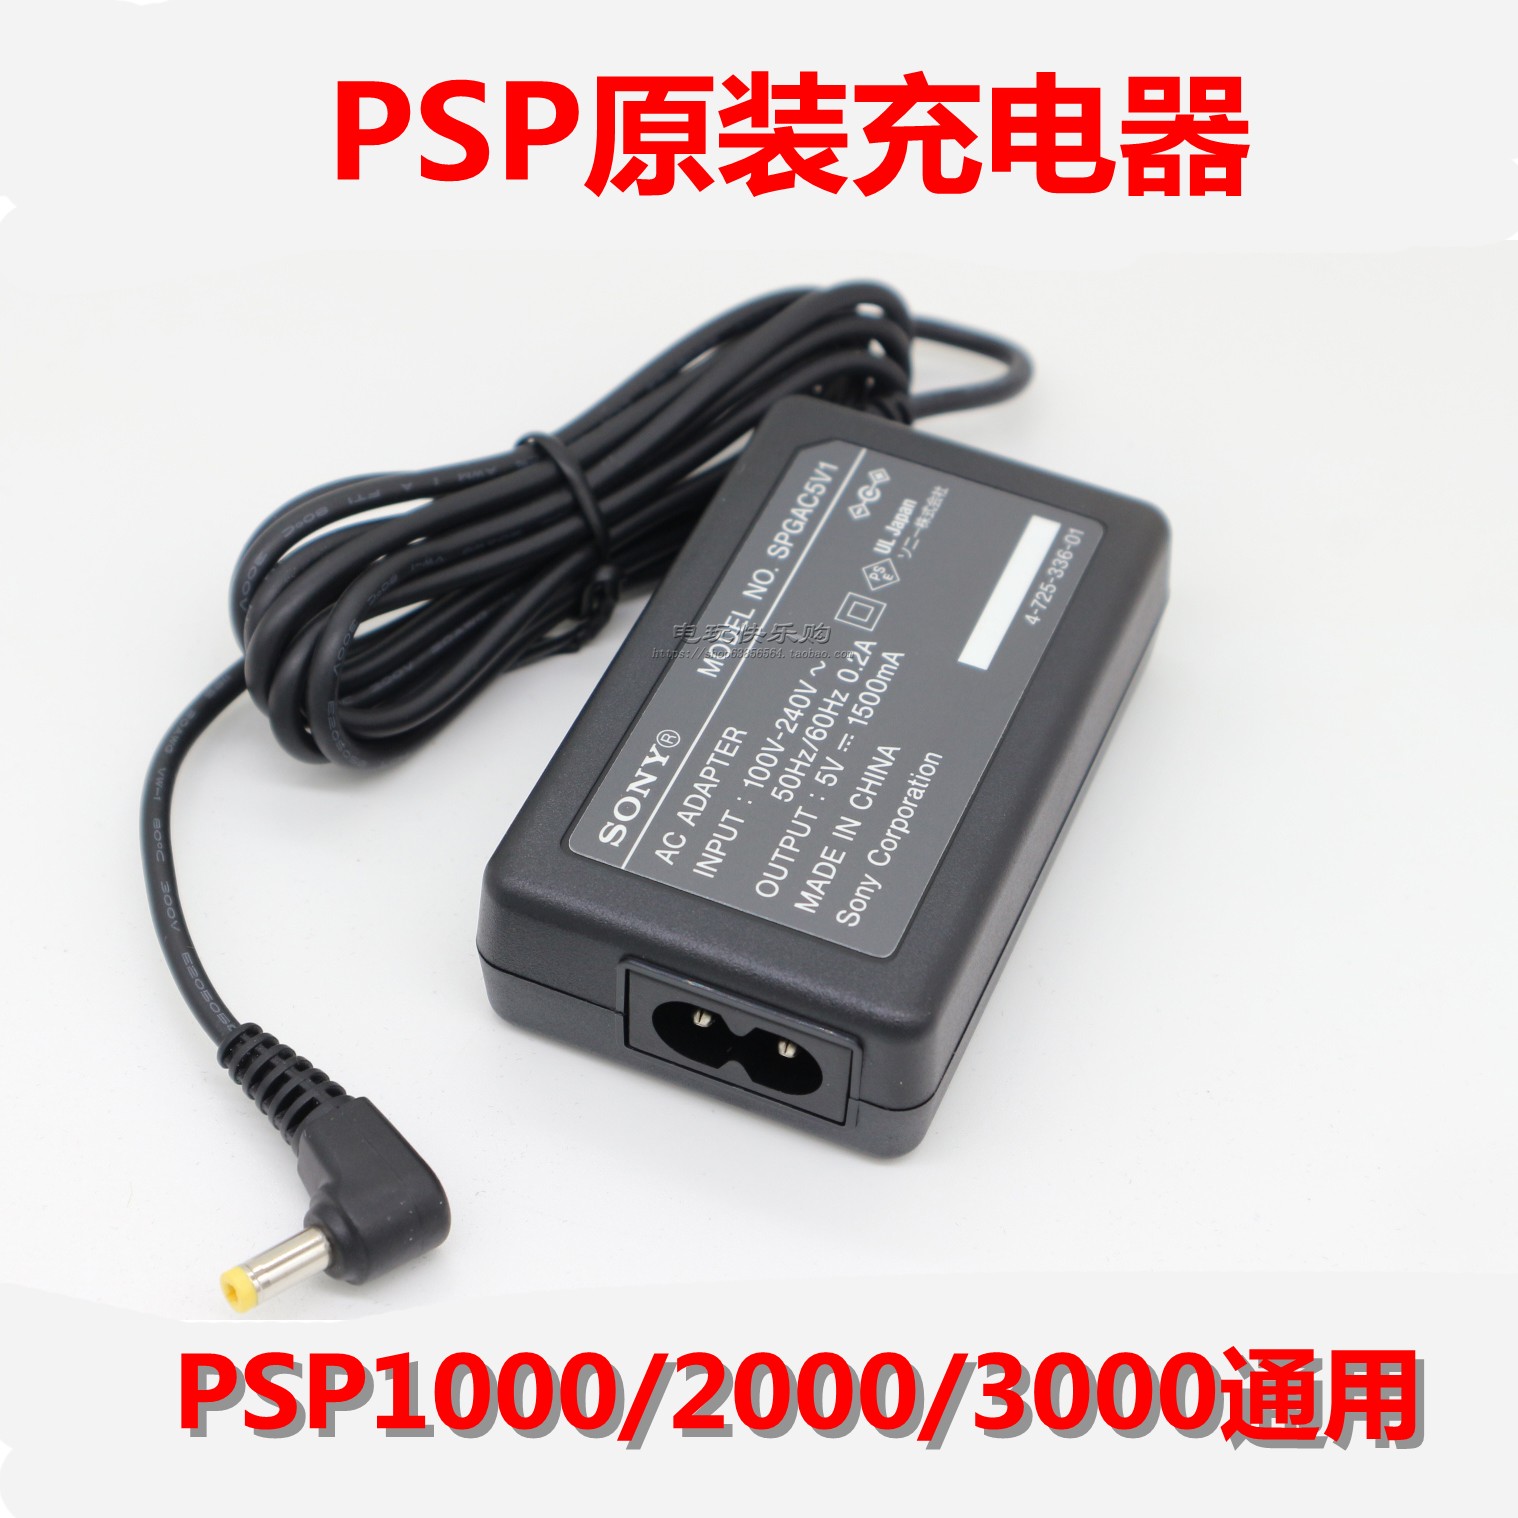 原装索尼游戏机psp3000充电器psp2000 1000 PSPE主机充电电源火牛